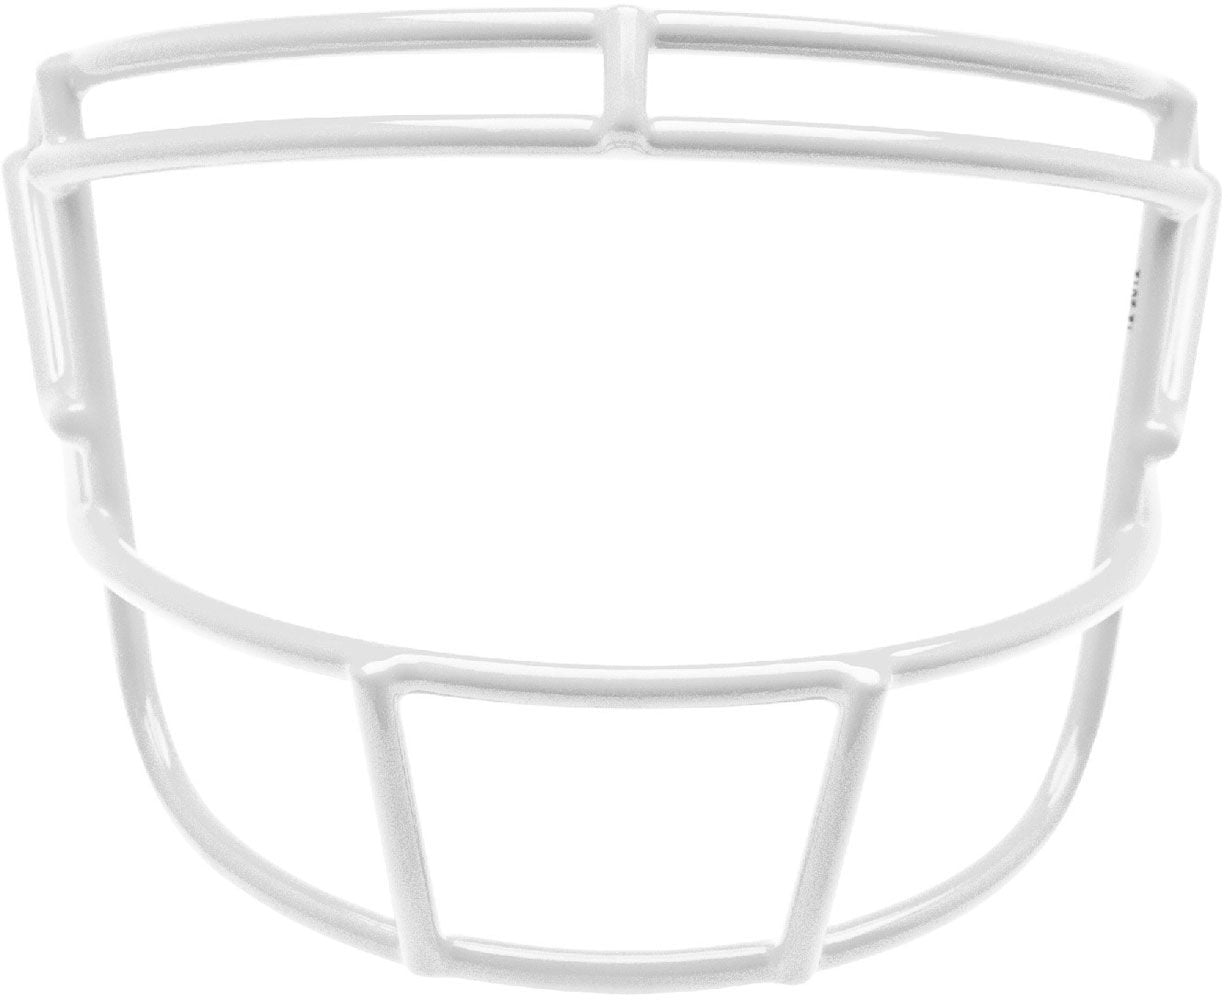 KICKER Schutt Super Pro RKOP Football Helmet Facemask COLOR OF YOUR CHOICE! 